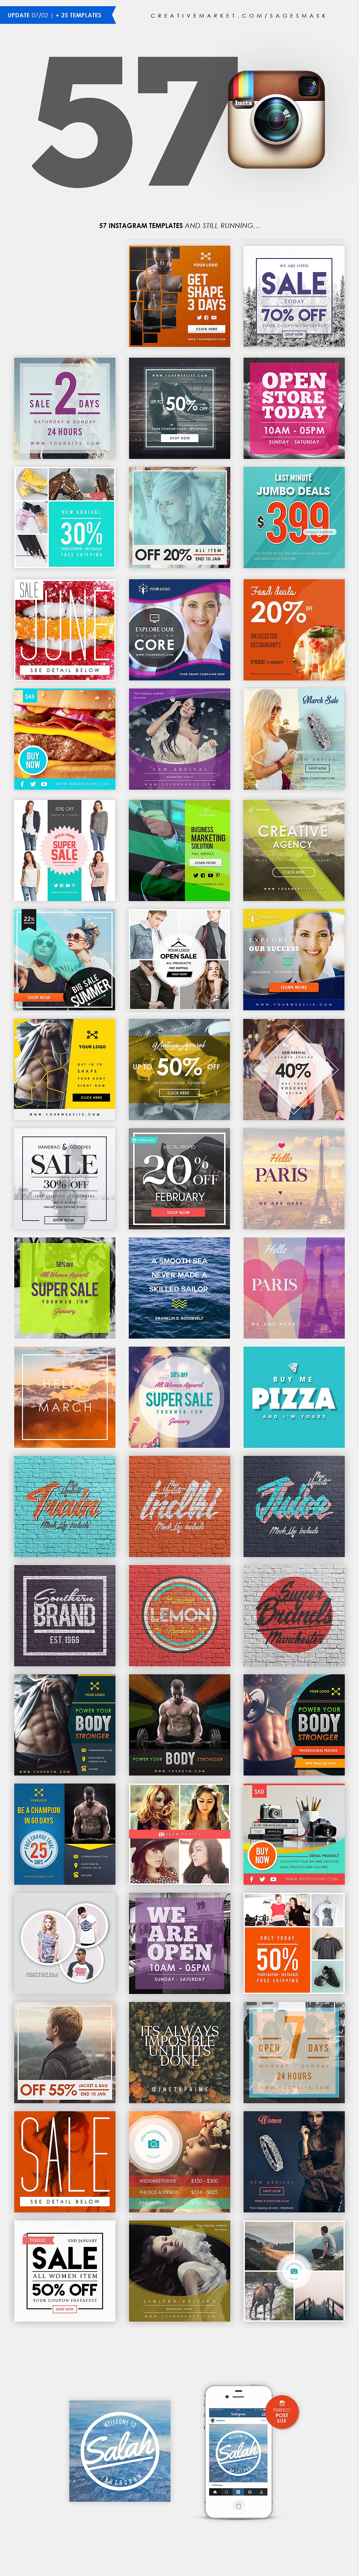 57款产品促销电商广告Instagram模板 57 Instagram Templates插图12